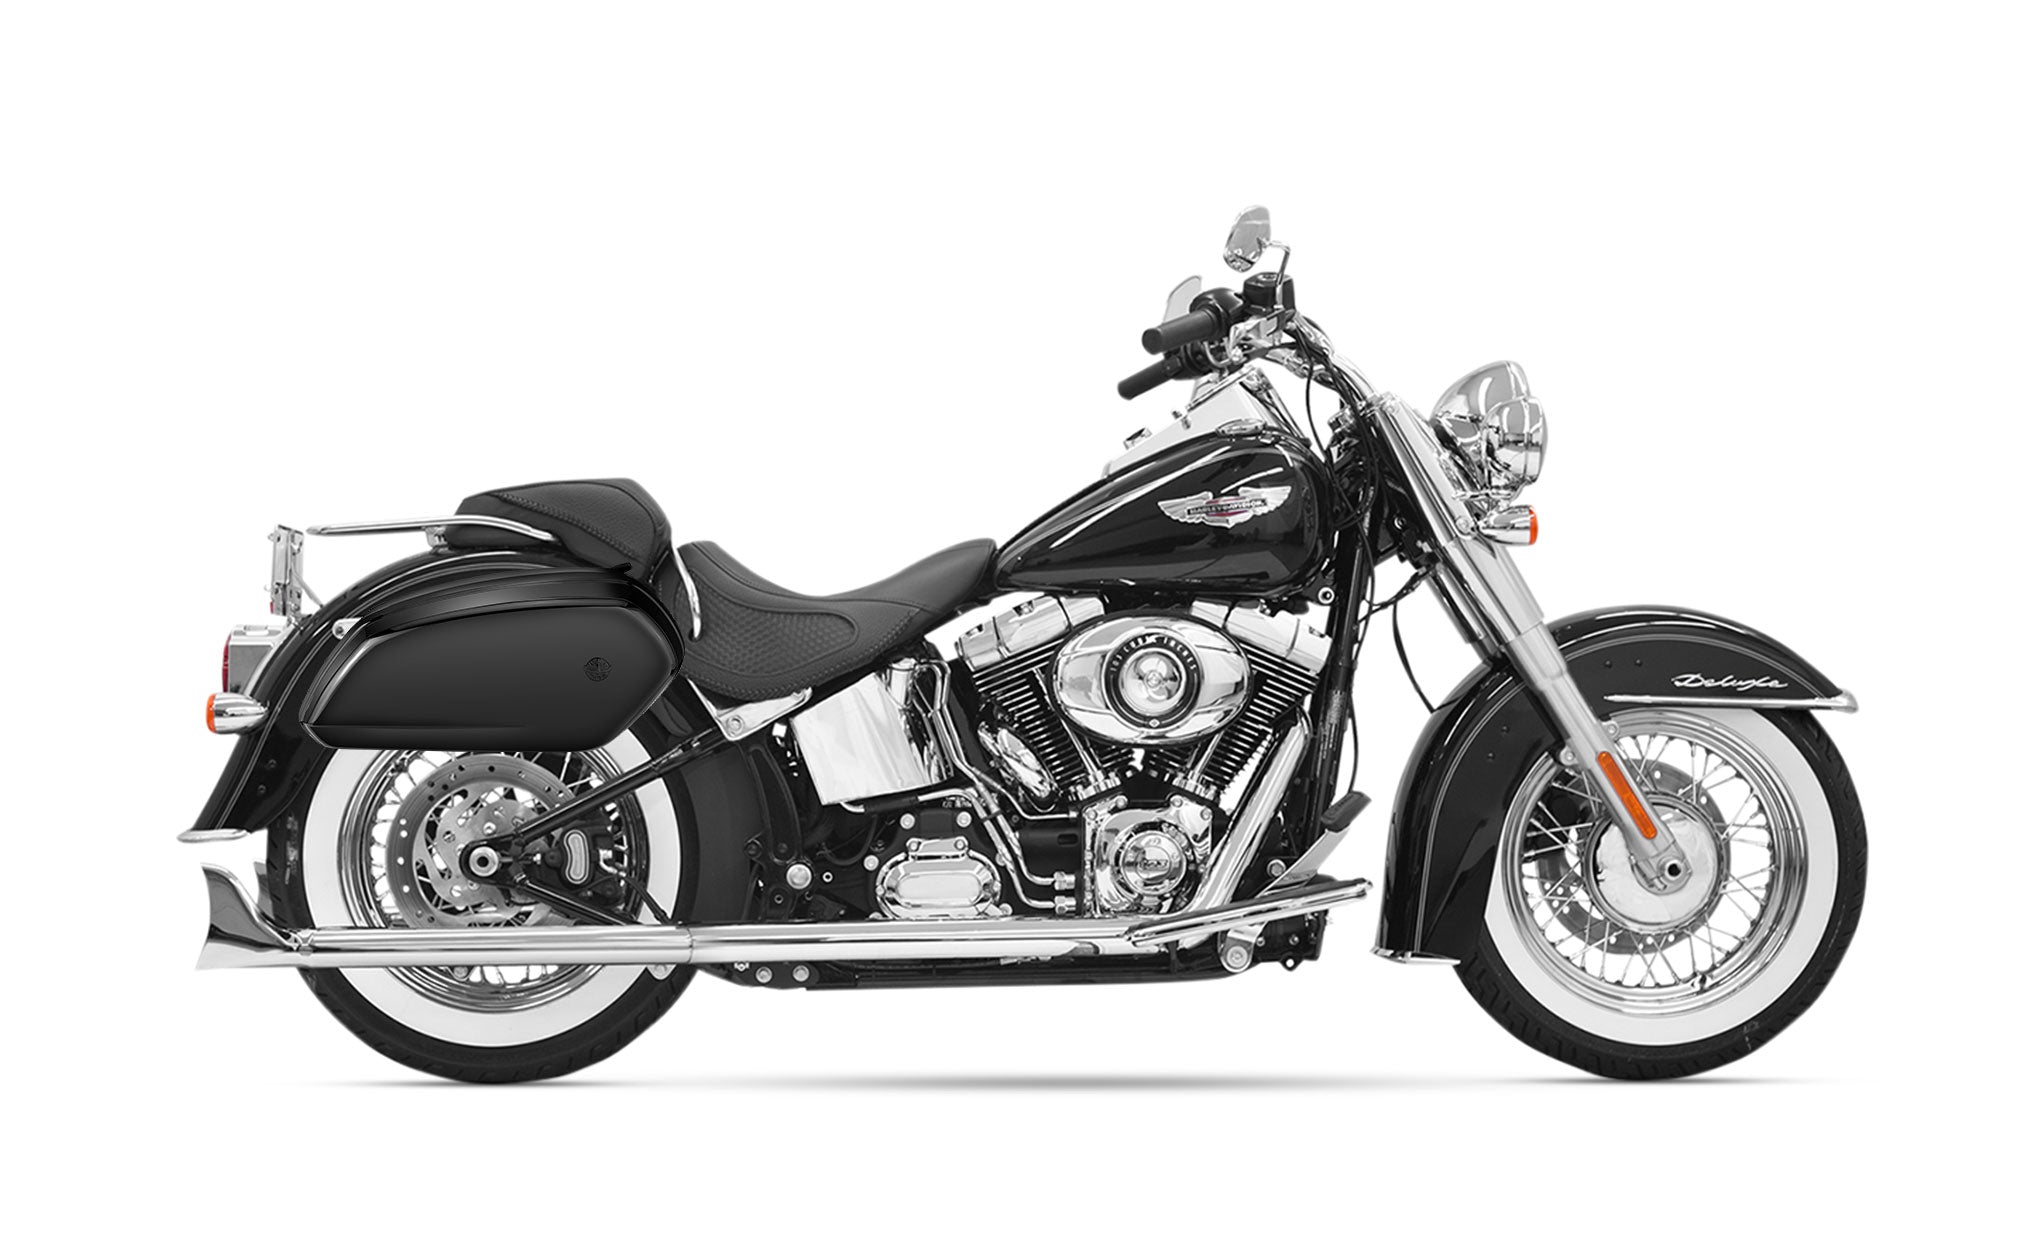 26L - Viper Large Harley Softail Heritage FLST/I/C/CI Painted Motorcycle Hard Saddlebags on Bike Photo @expand